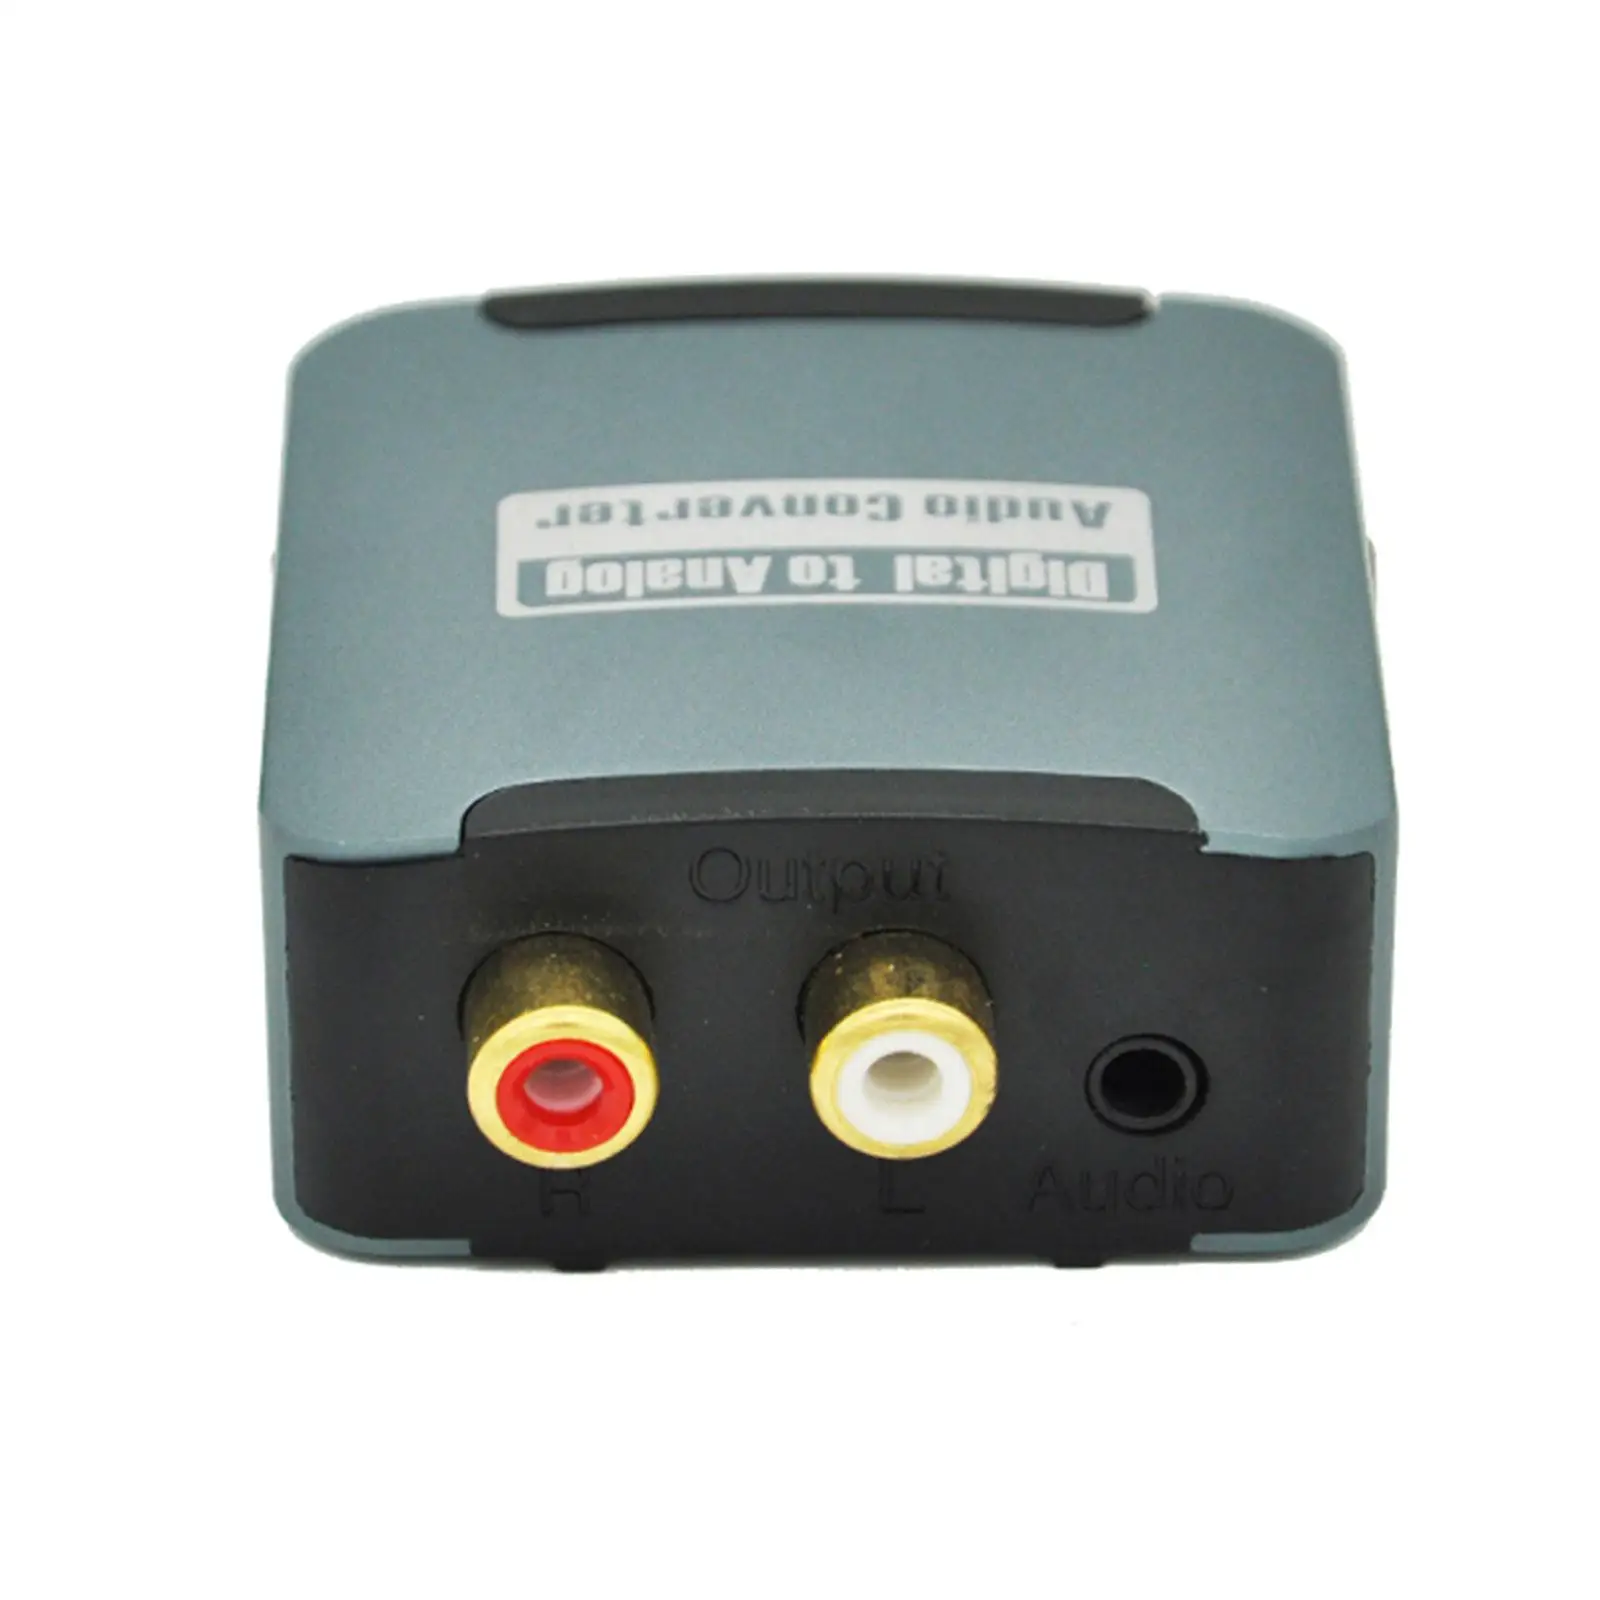 Digital to Analog Audio Converter Portable Coaxial Optical to Analog L/R RCA Coaxial Optical to 3.5mm Jack for DVD Speaker TV